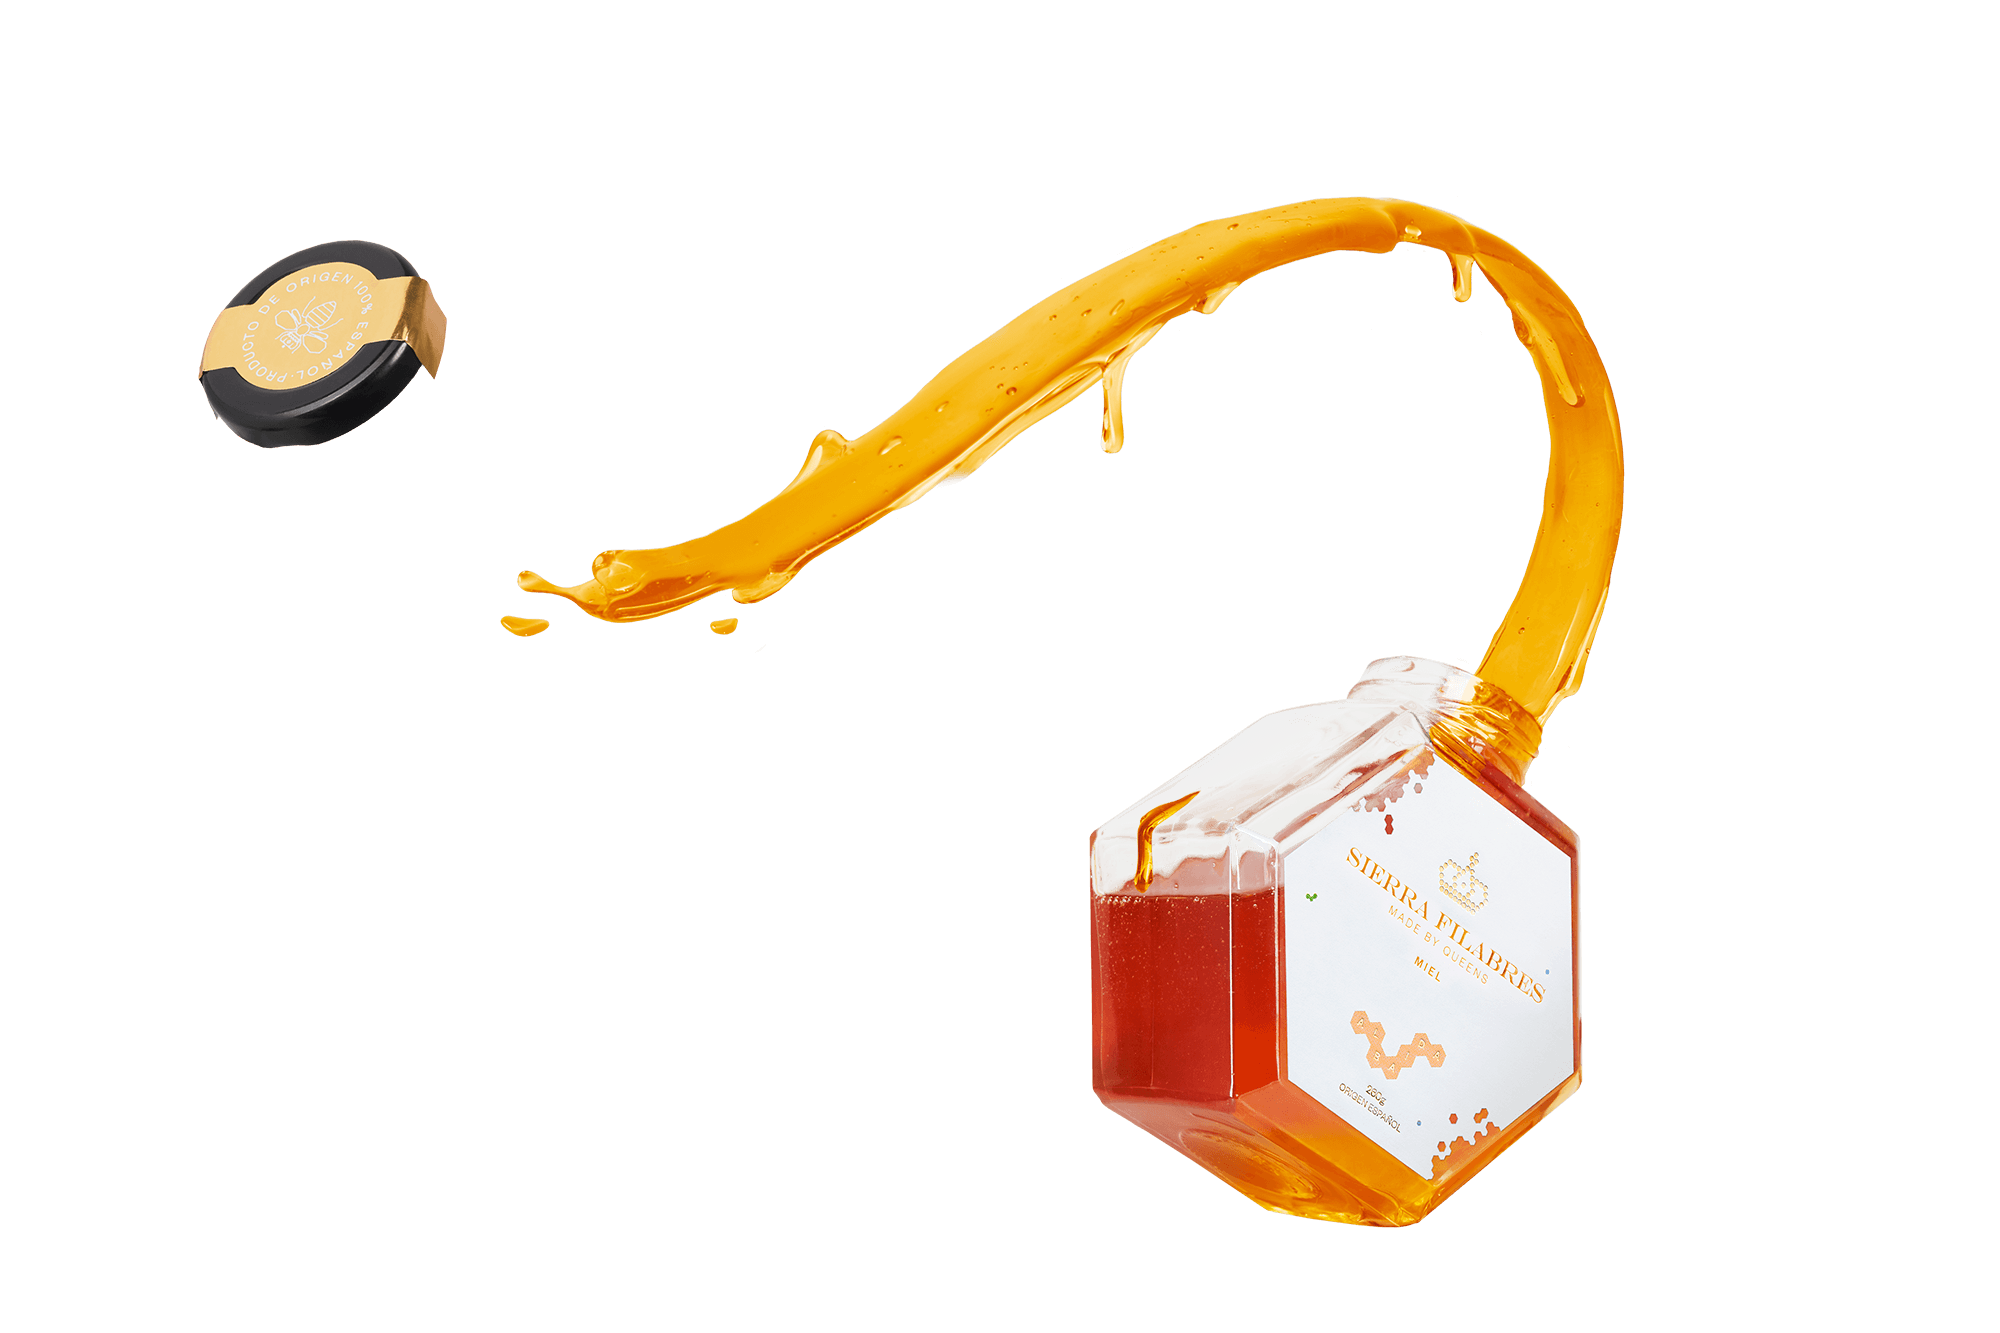 compra-miel-premium-online-miel-sierra-filabres-miel-sale-del-bote